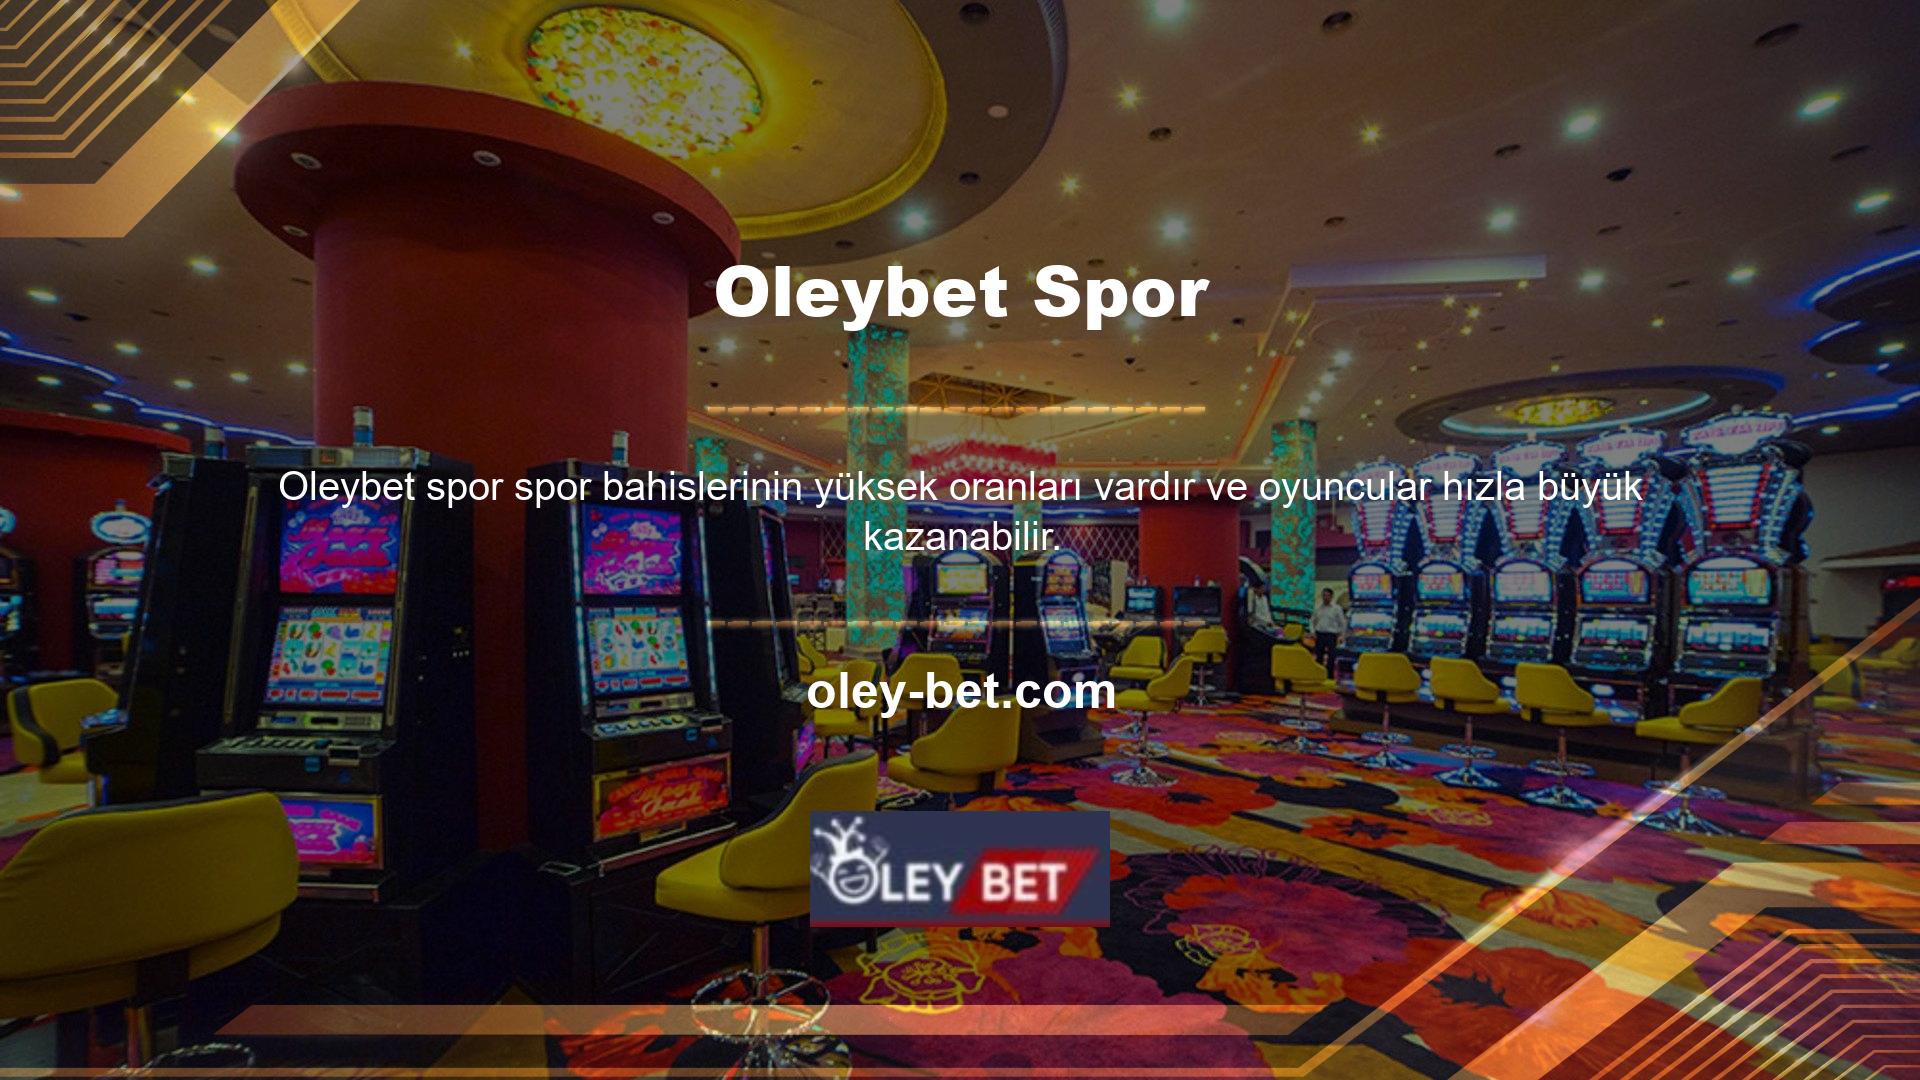 Oleybet Bahis zaman zaman oyuncularına bonuslar sunmakta ve kullanıcılarına en uygun şekilde hizmet vermeye devam etmektedir